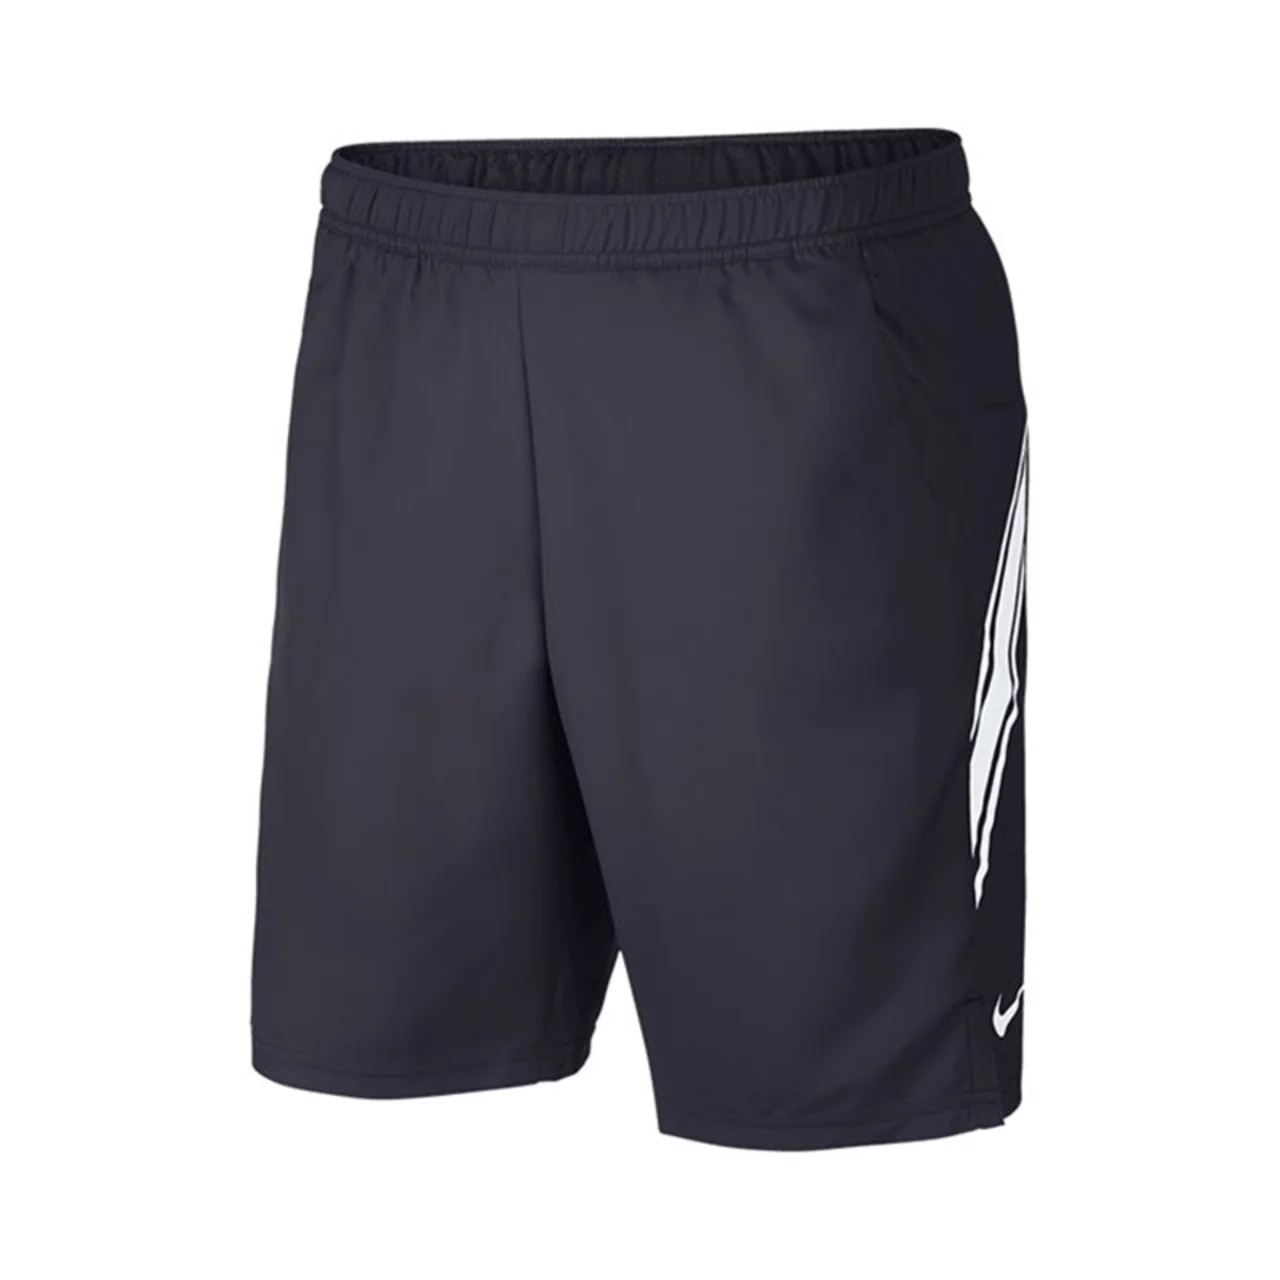 Nike Dry 9'' Shorts Gridiron/White Size S